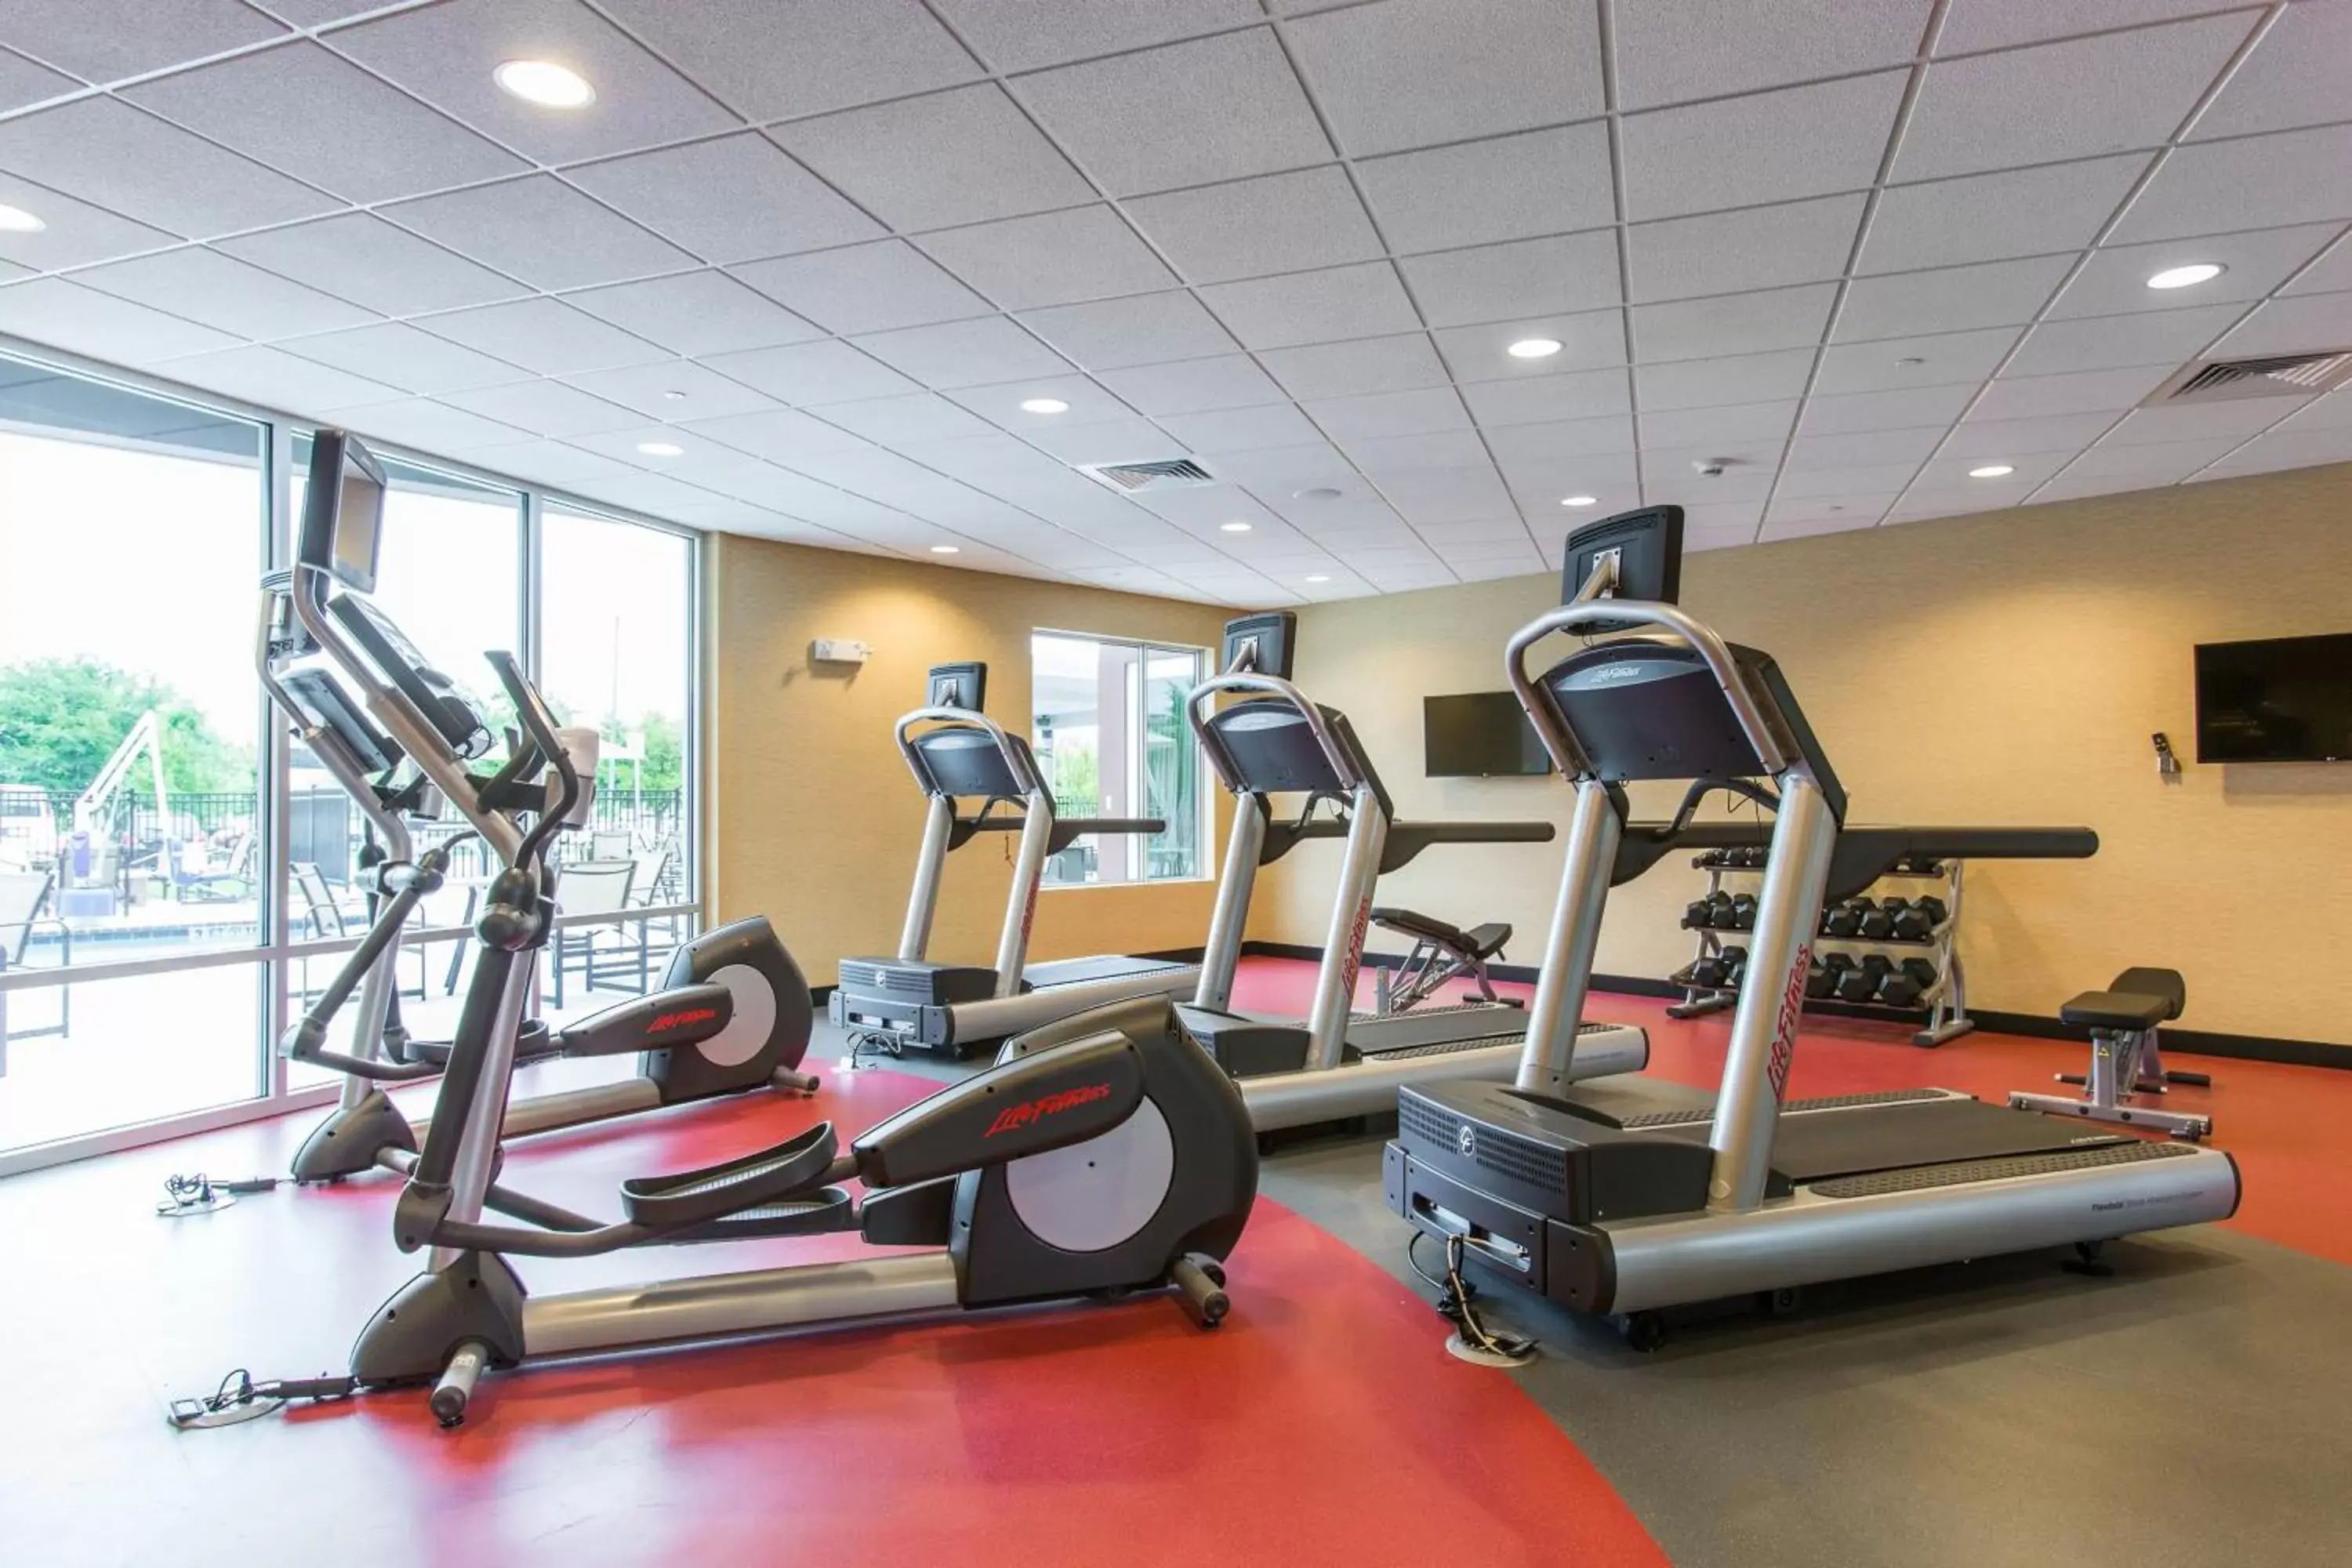 Fitness centre/facilities, Fitness Center/Facilities in Cambria Hotel Plano - Frisco